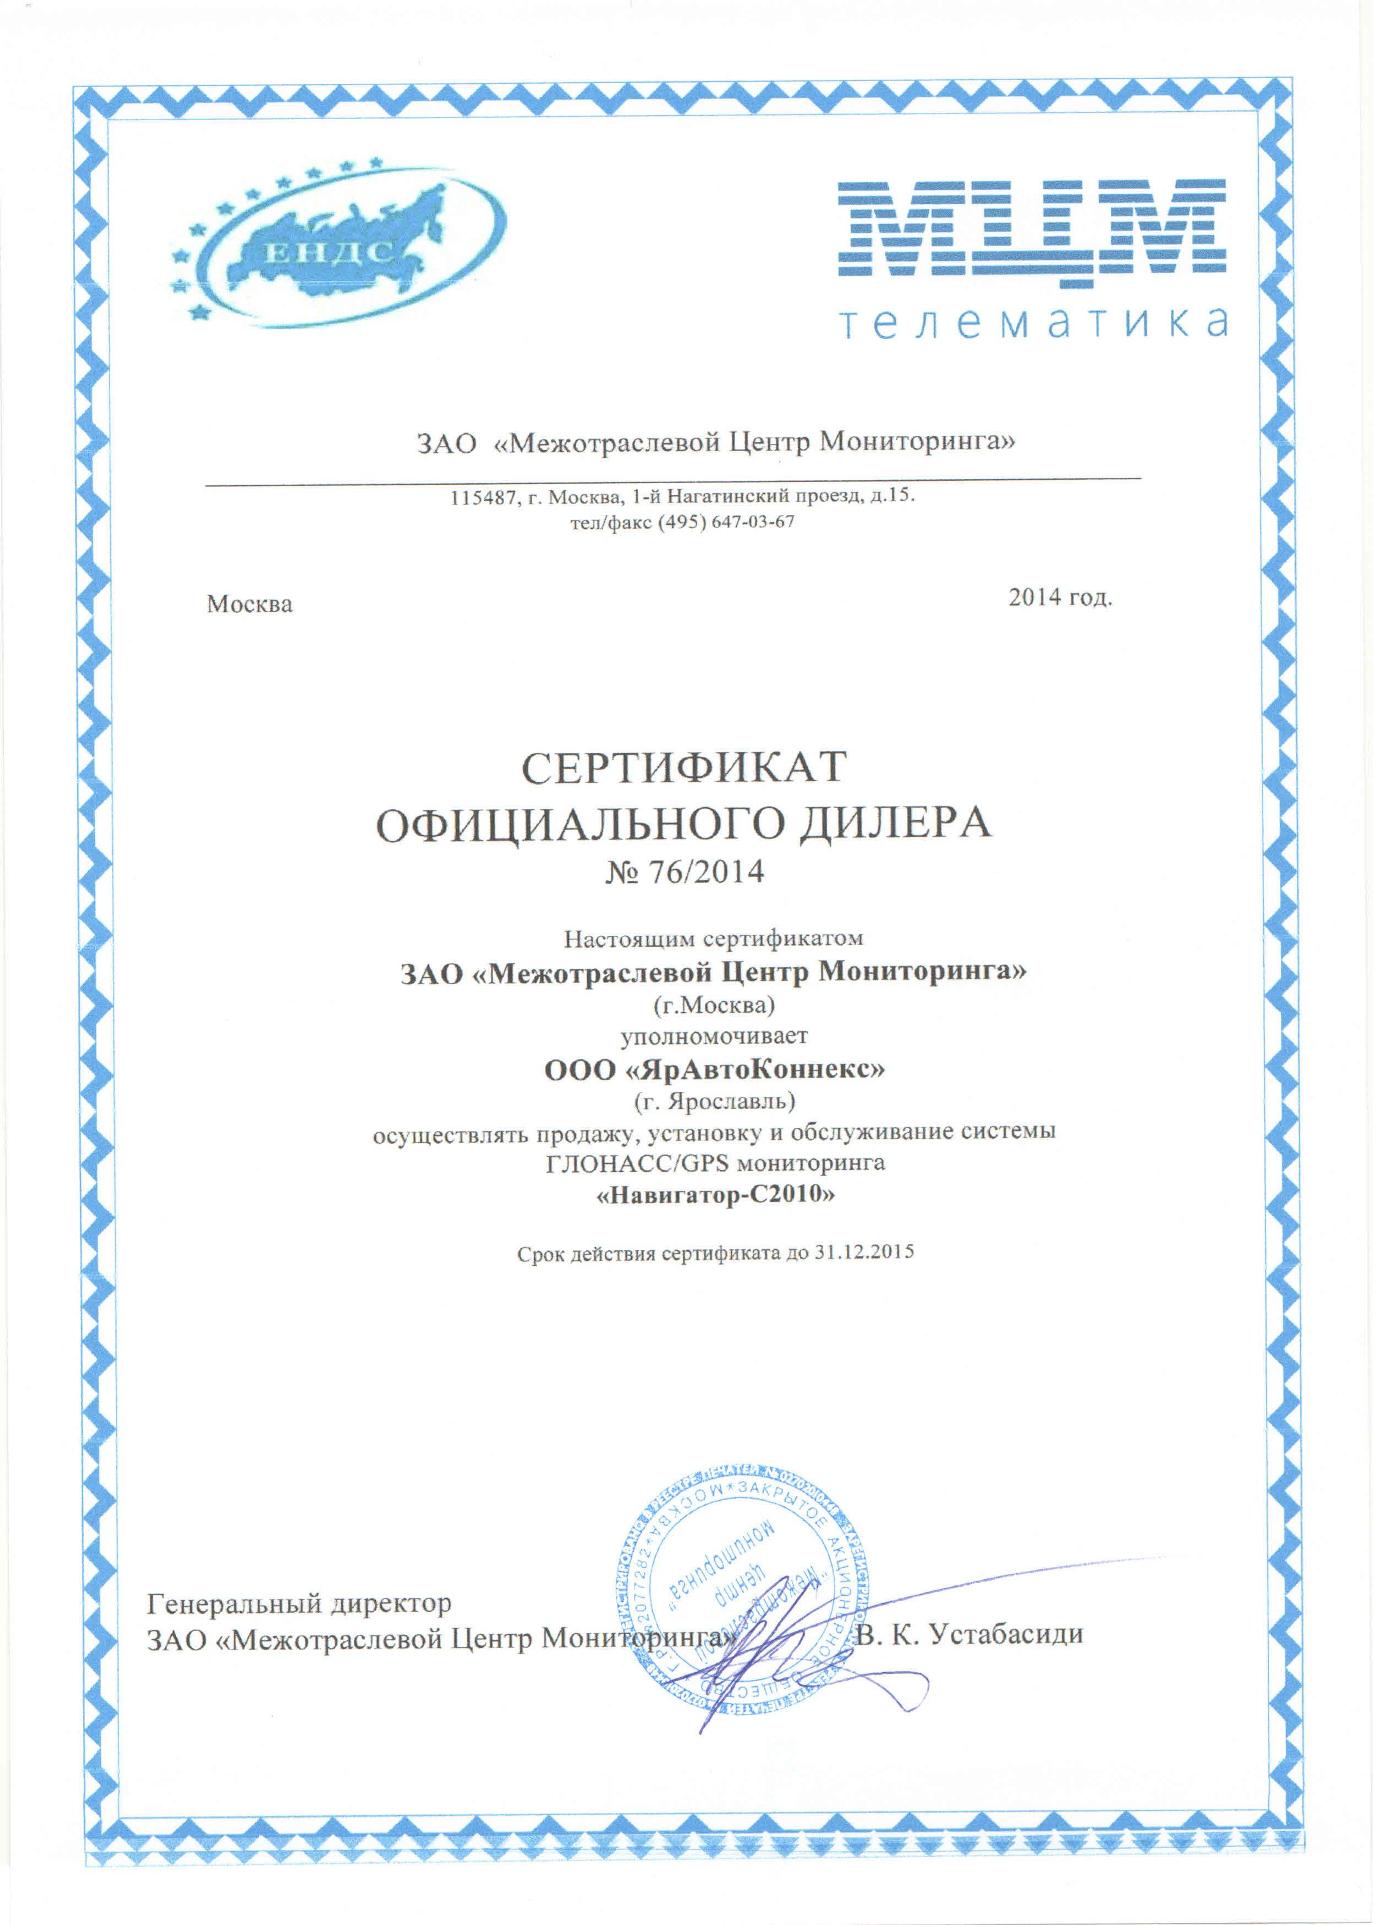 Сертификат МЦМ